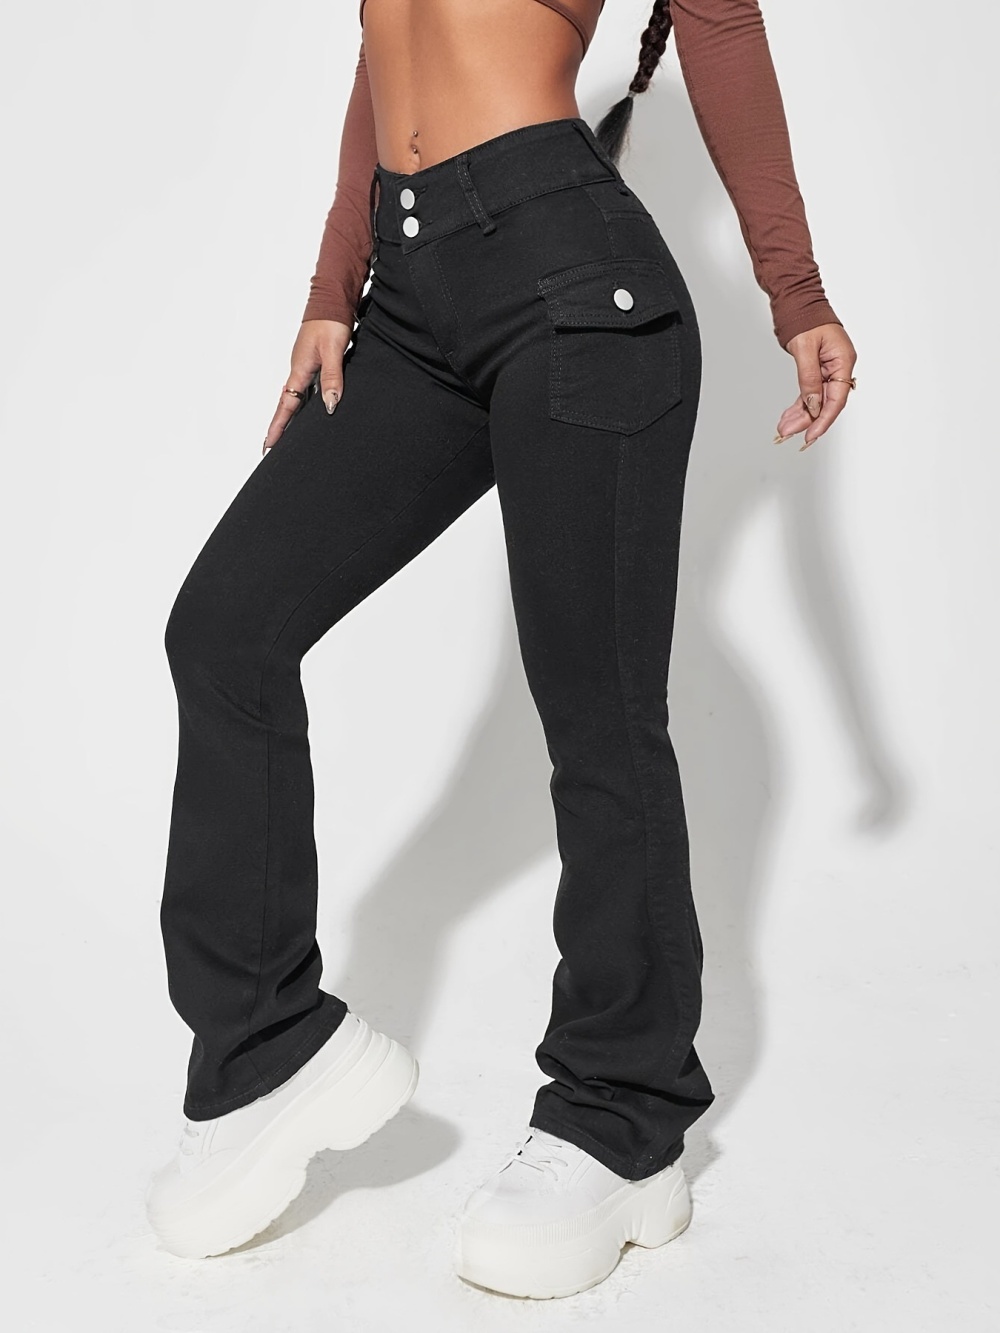 Slim European style high waist fashion jeans